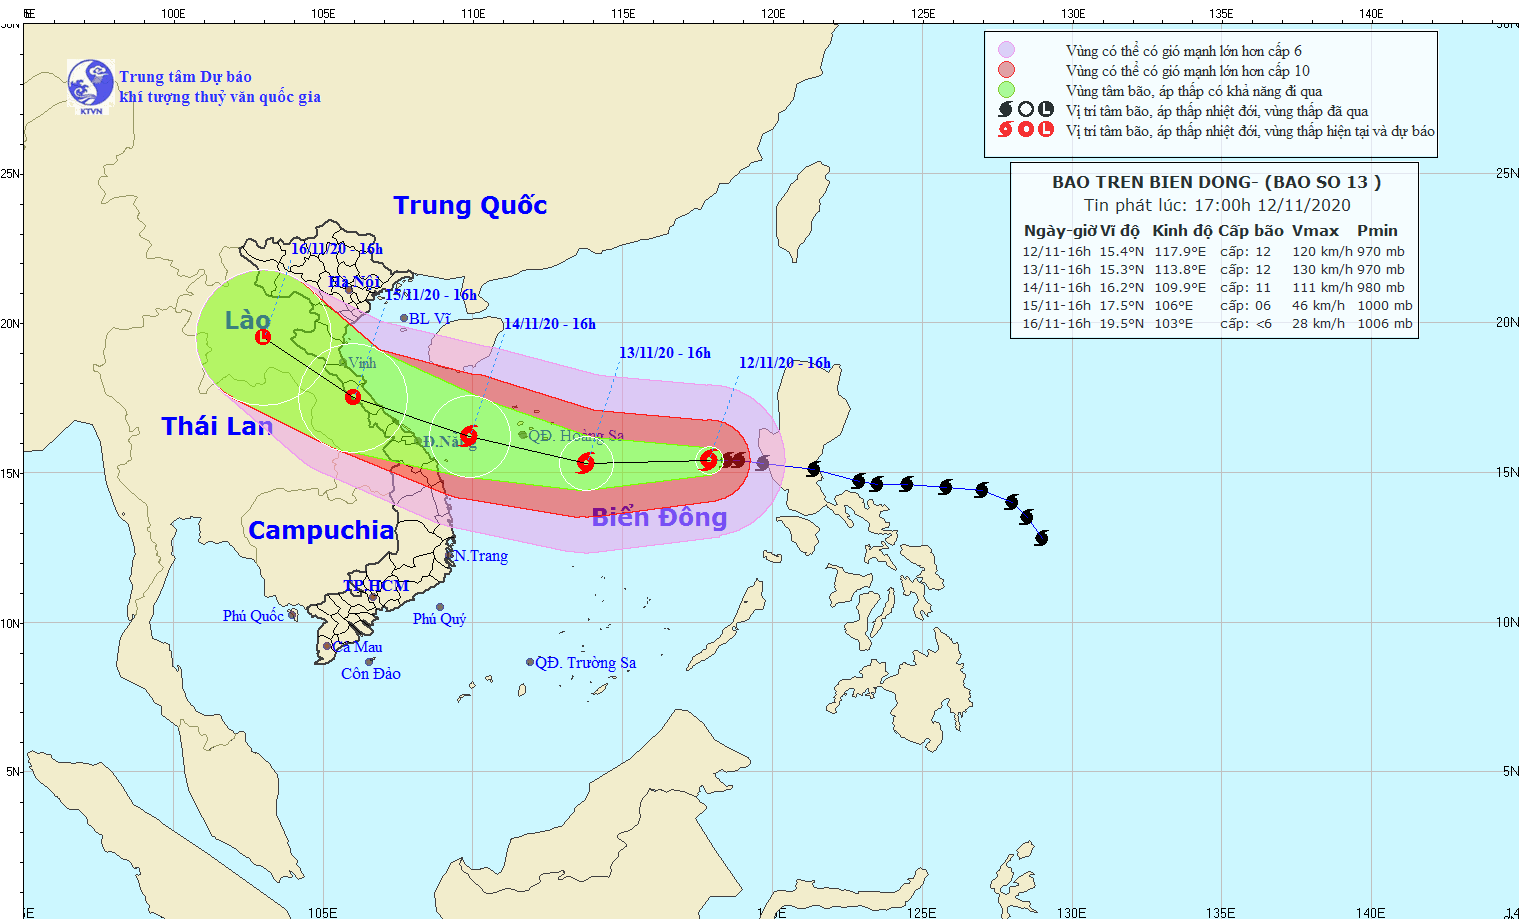 Bão số 13 (Vamco) ầm ầm tiến vào biển Đông, vùng bị ảnh hưởng 250km tính từ tâm bão